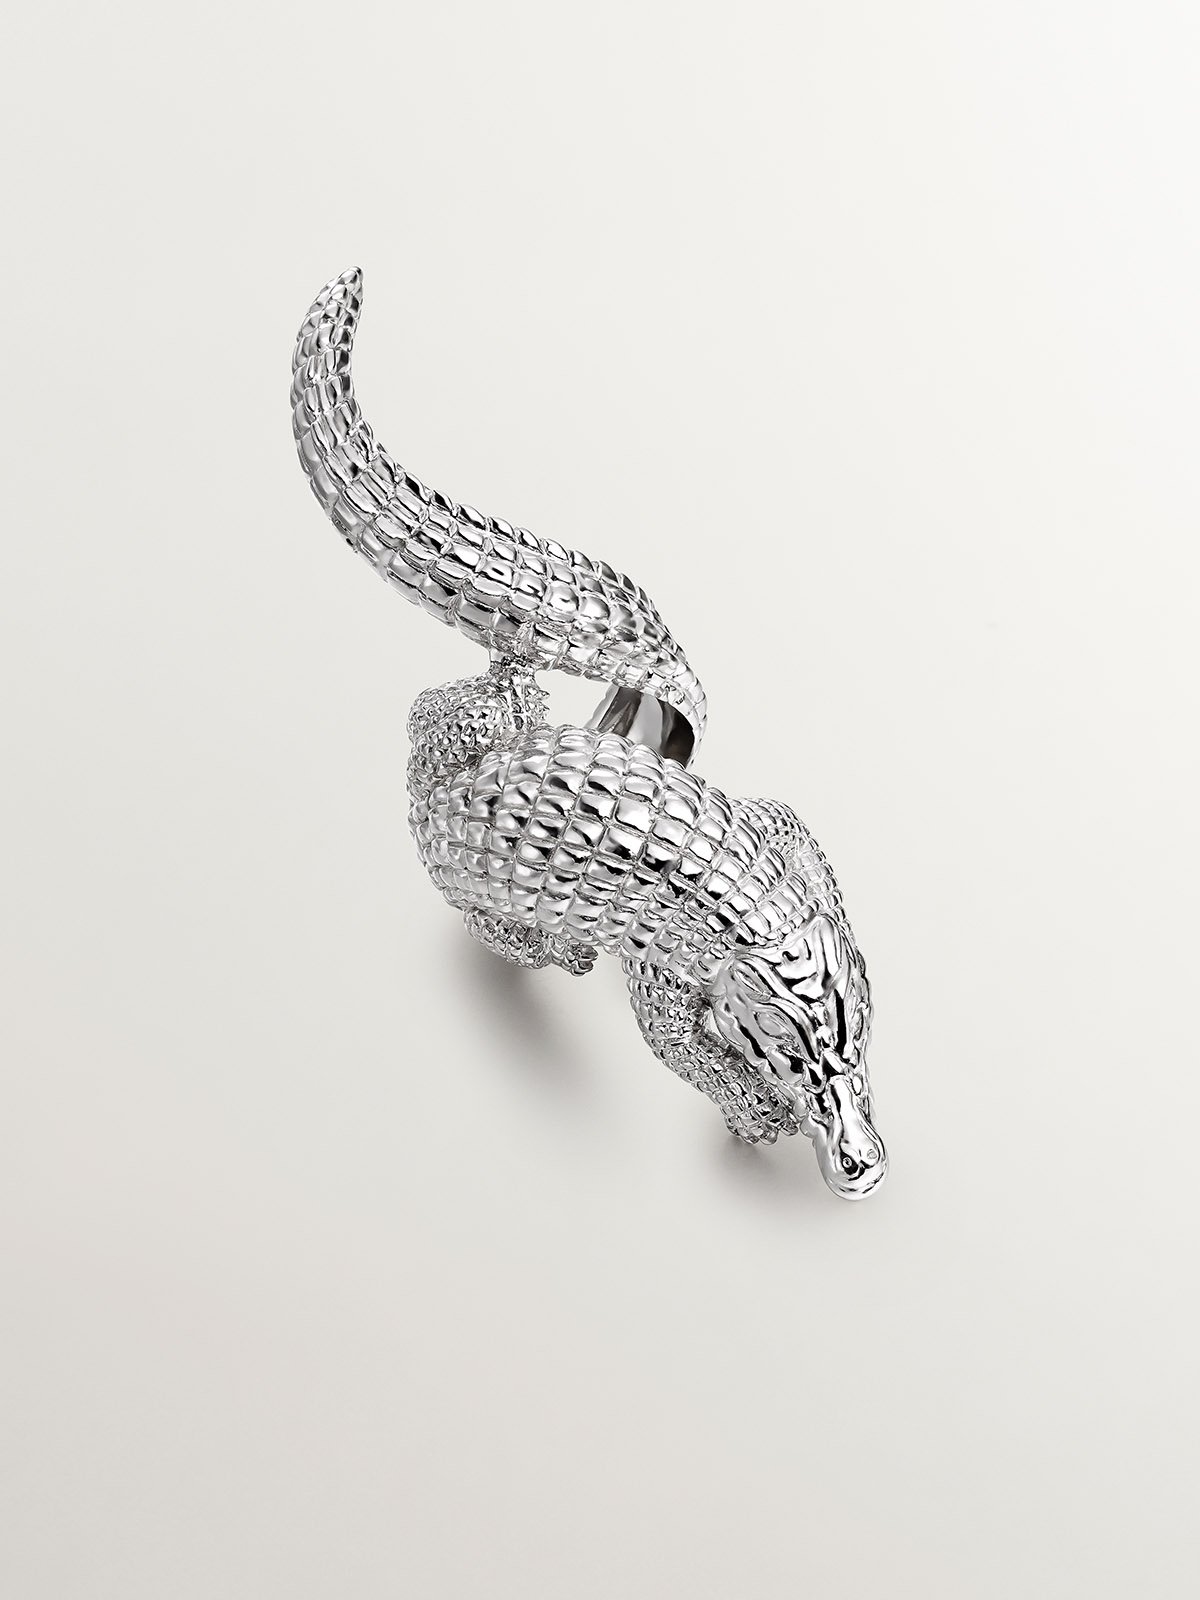 Large 925 silver ring shaped like crocodile